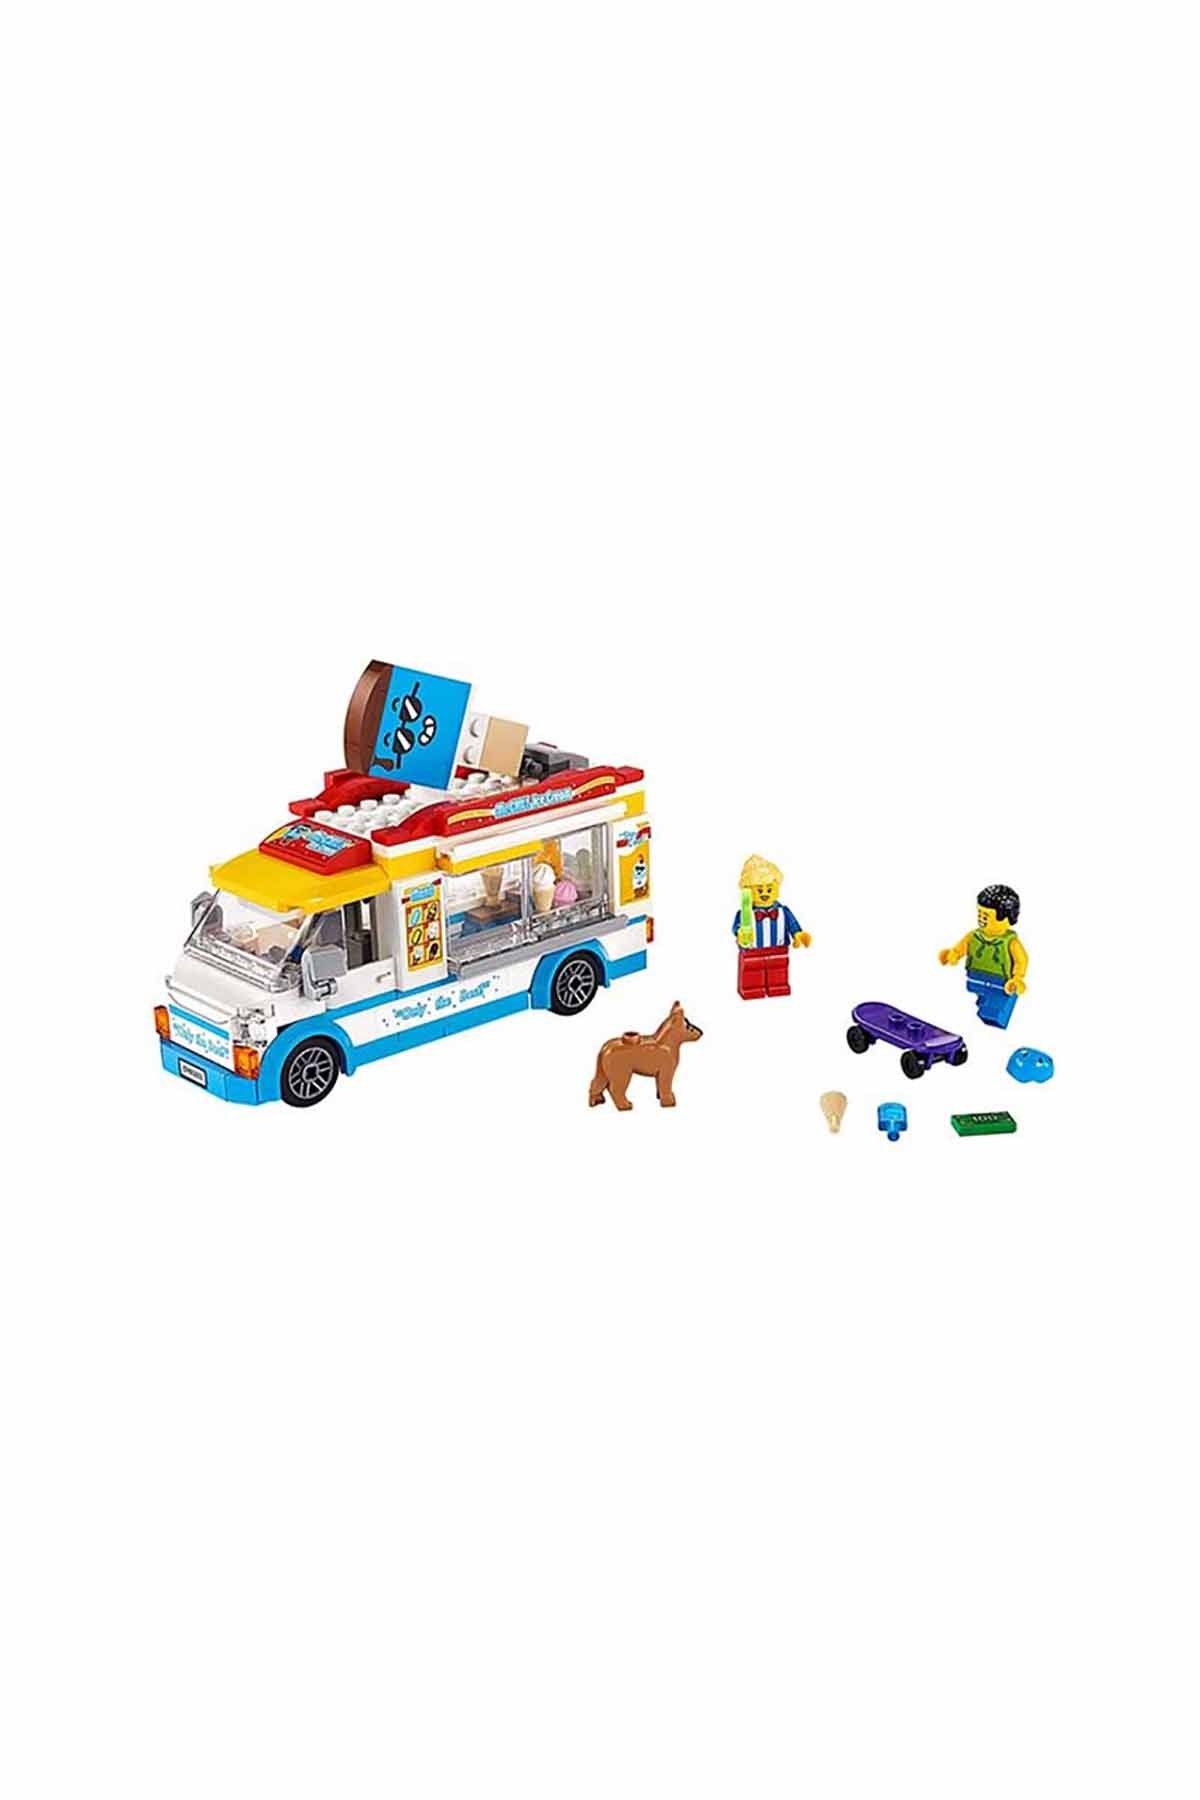 Lego City Dondurma Arabası 60253